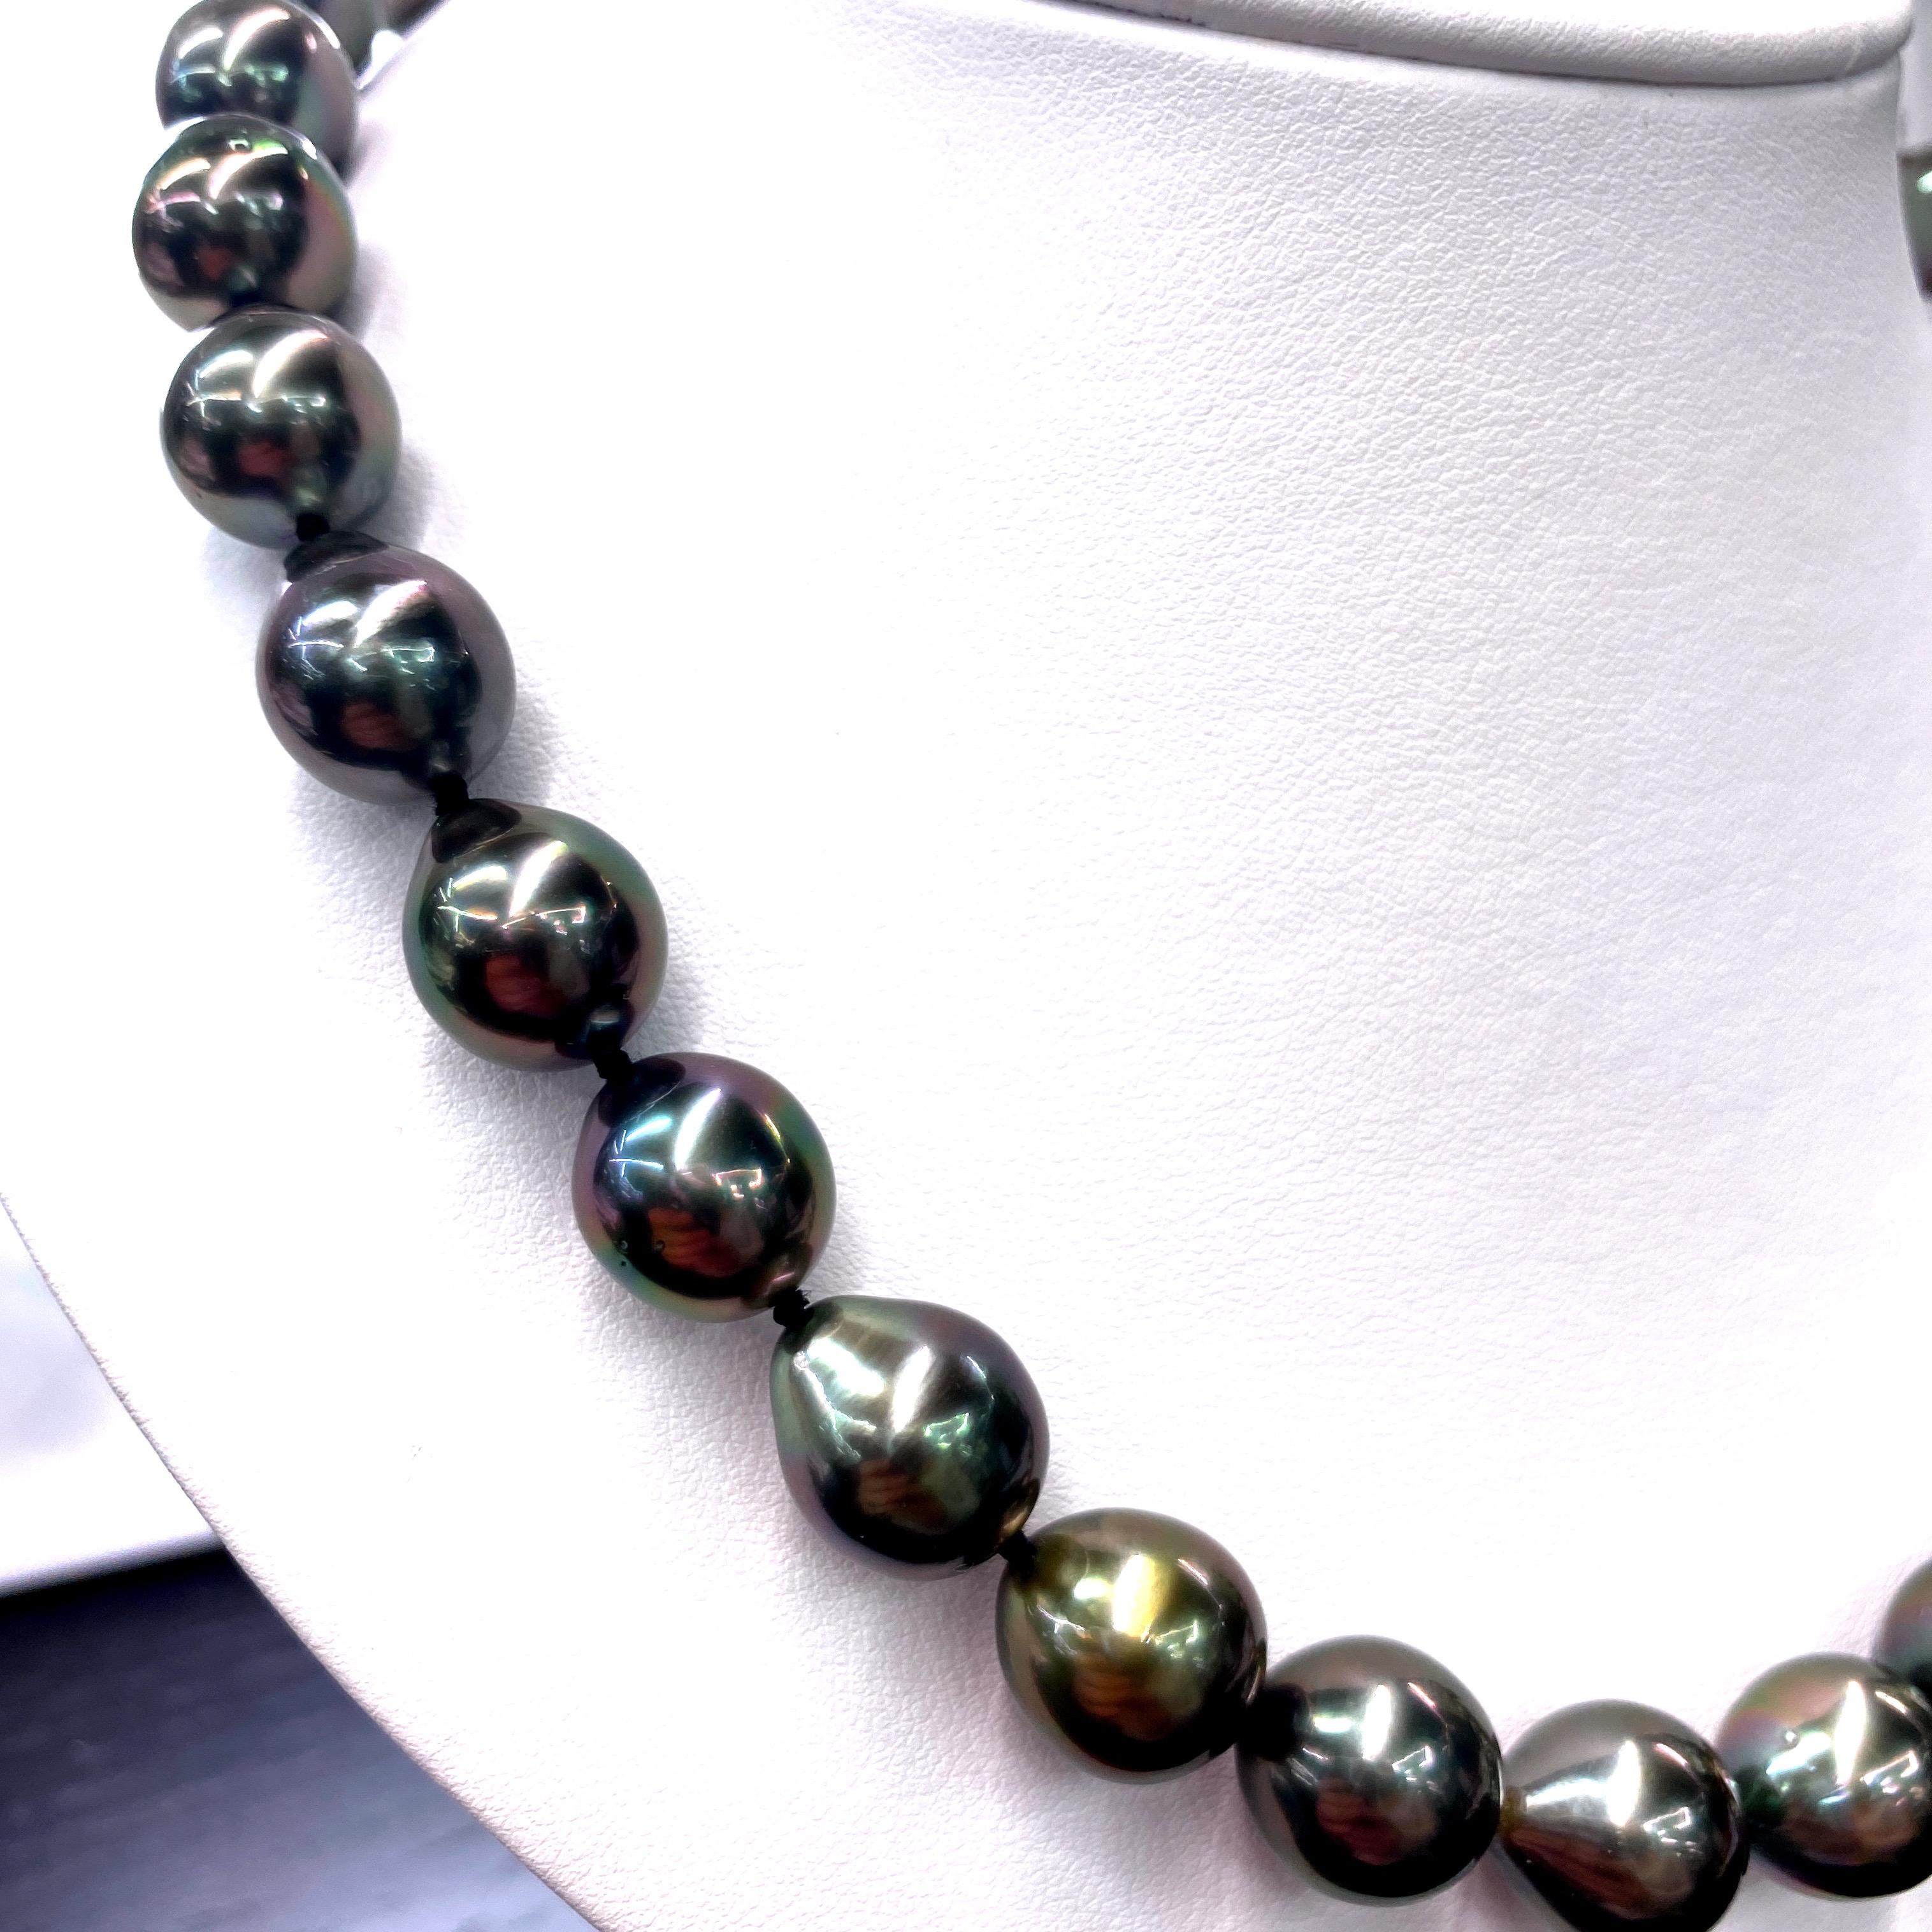 Perfekt abgestimmte Perlenkette mit 31 Tahiti-Perlen von 10,1-12 mm und einem hochglanzpolierten Kugelverschluss aus 14K Weißgold. 

Qualität der Perlen: AAA
Perlglanz: AAA Ausgezeichnet
Perlmutt : Sehr dick

Der Strang kann auf Bestellung gekürzt